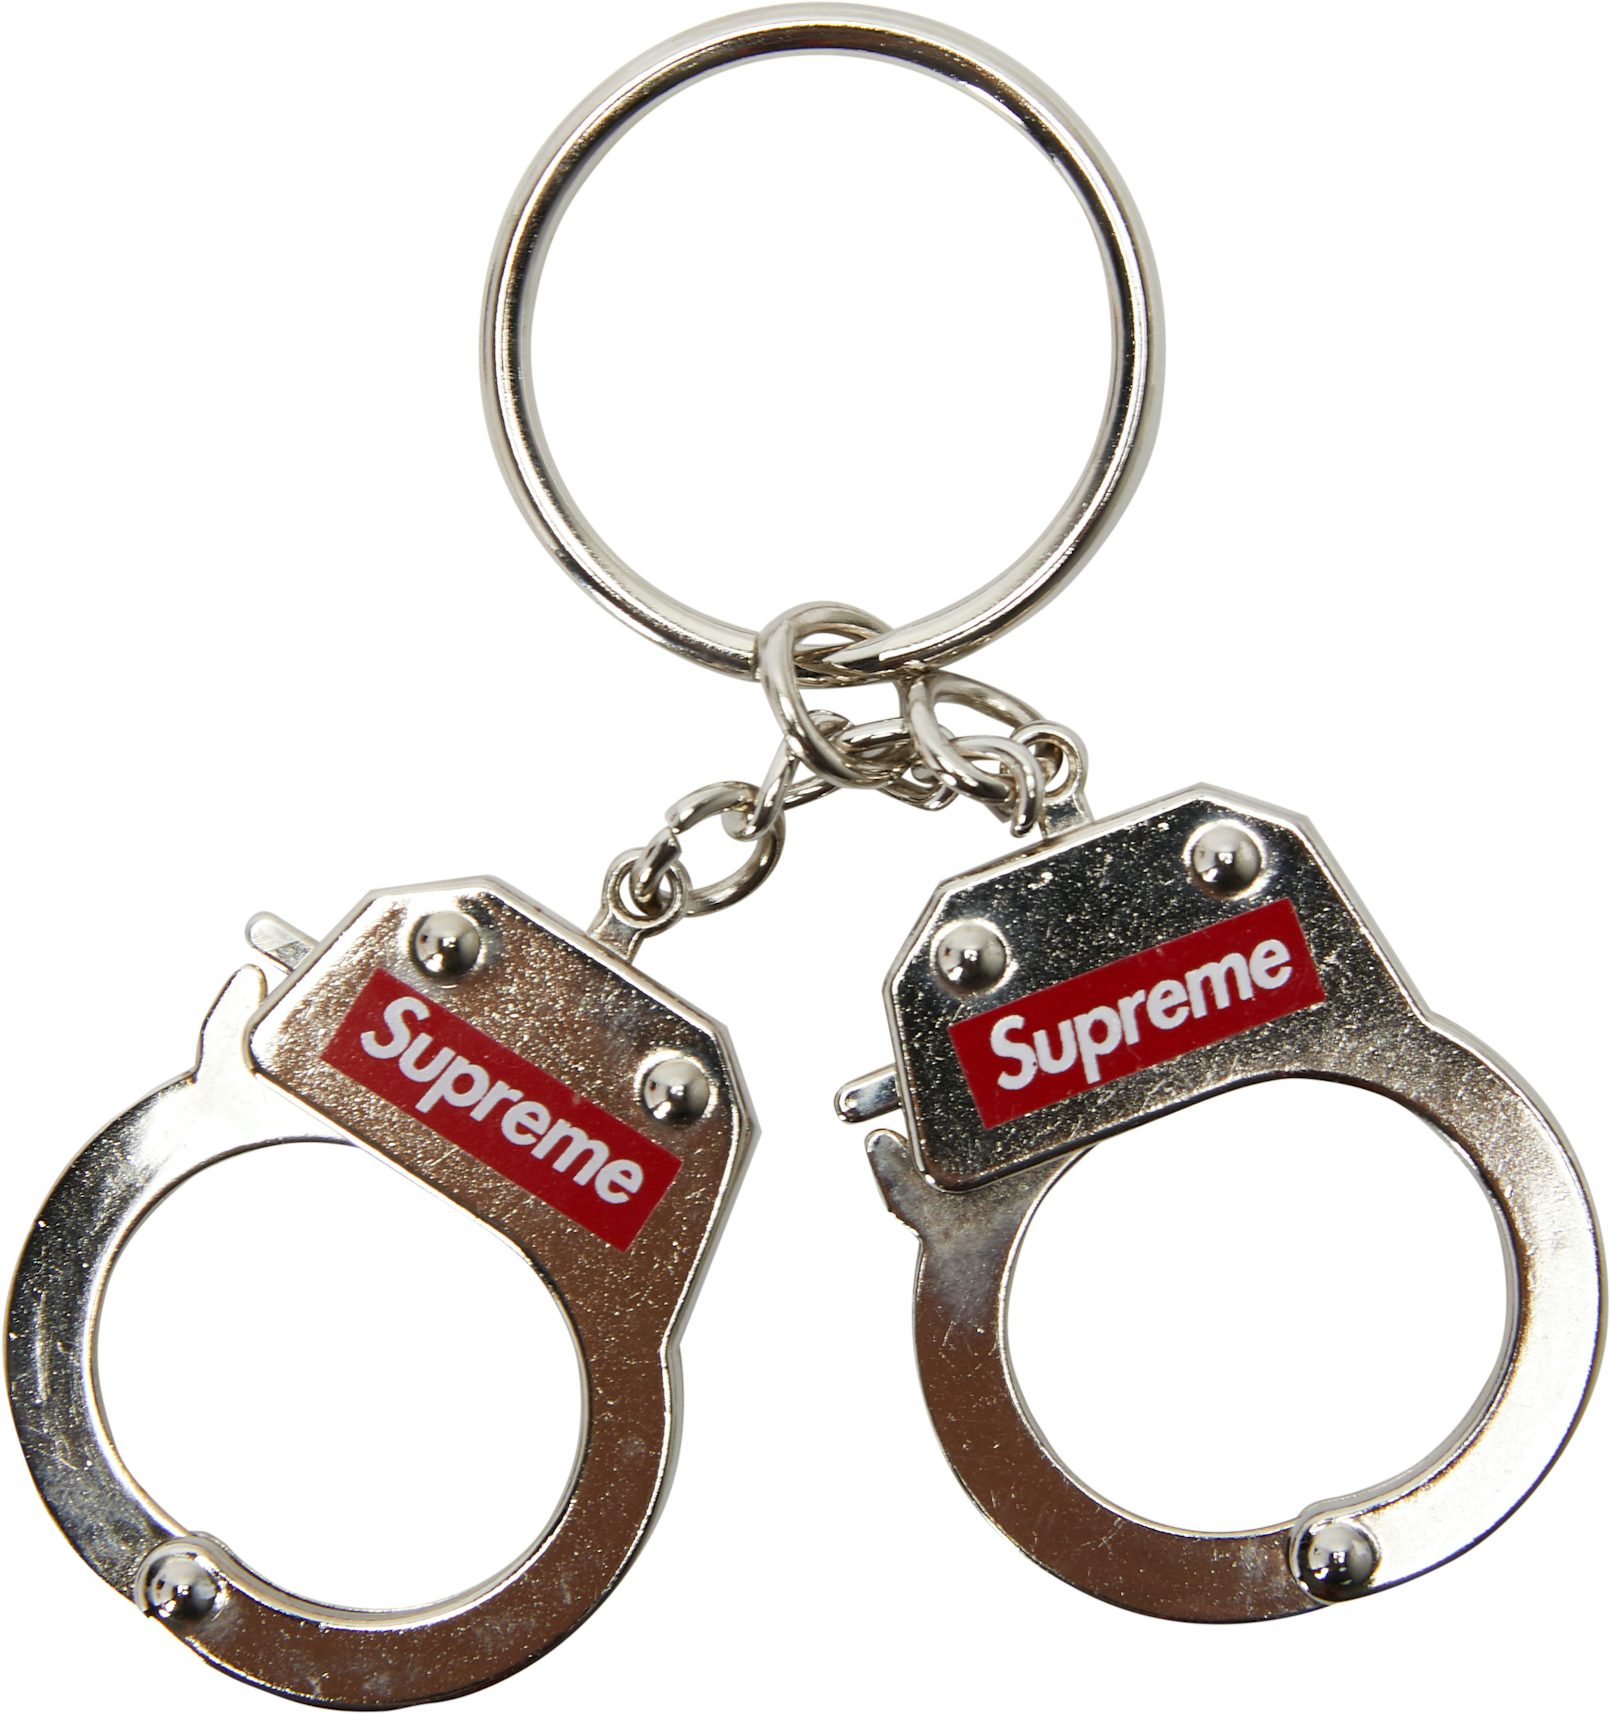 Adidas Yeezy x Supreme keychain